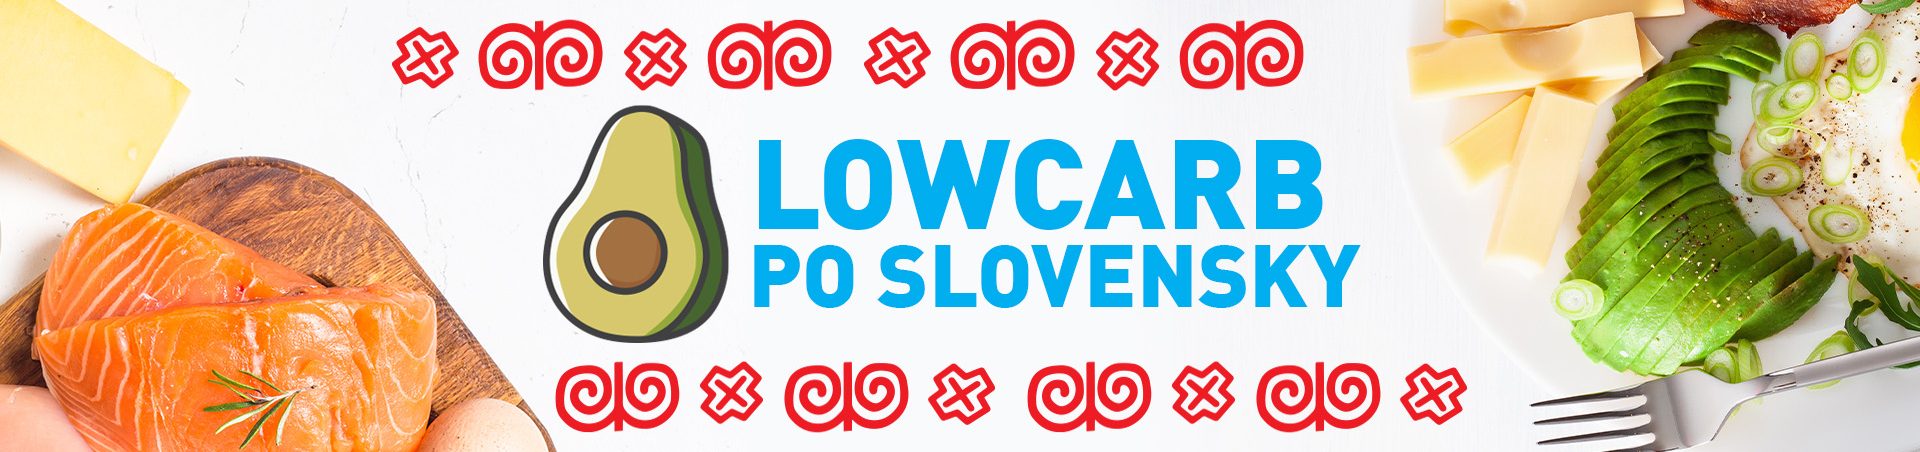 www.lowcarbposlovensky.sk